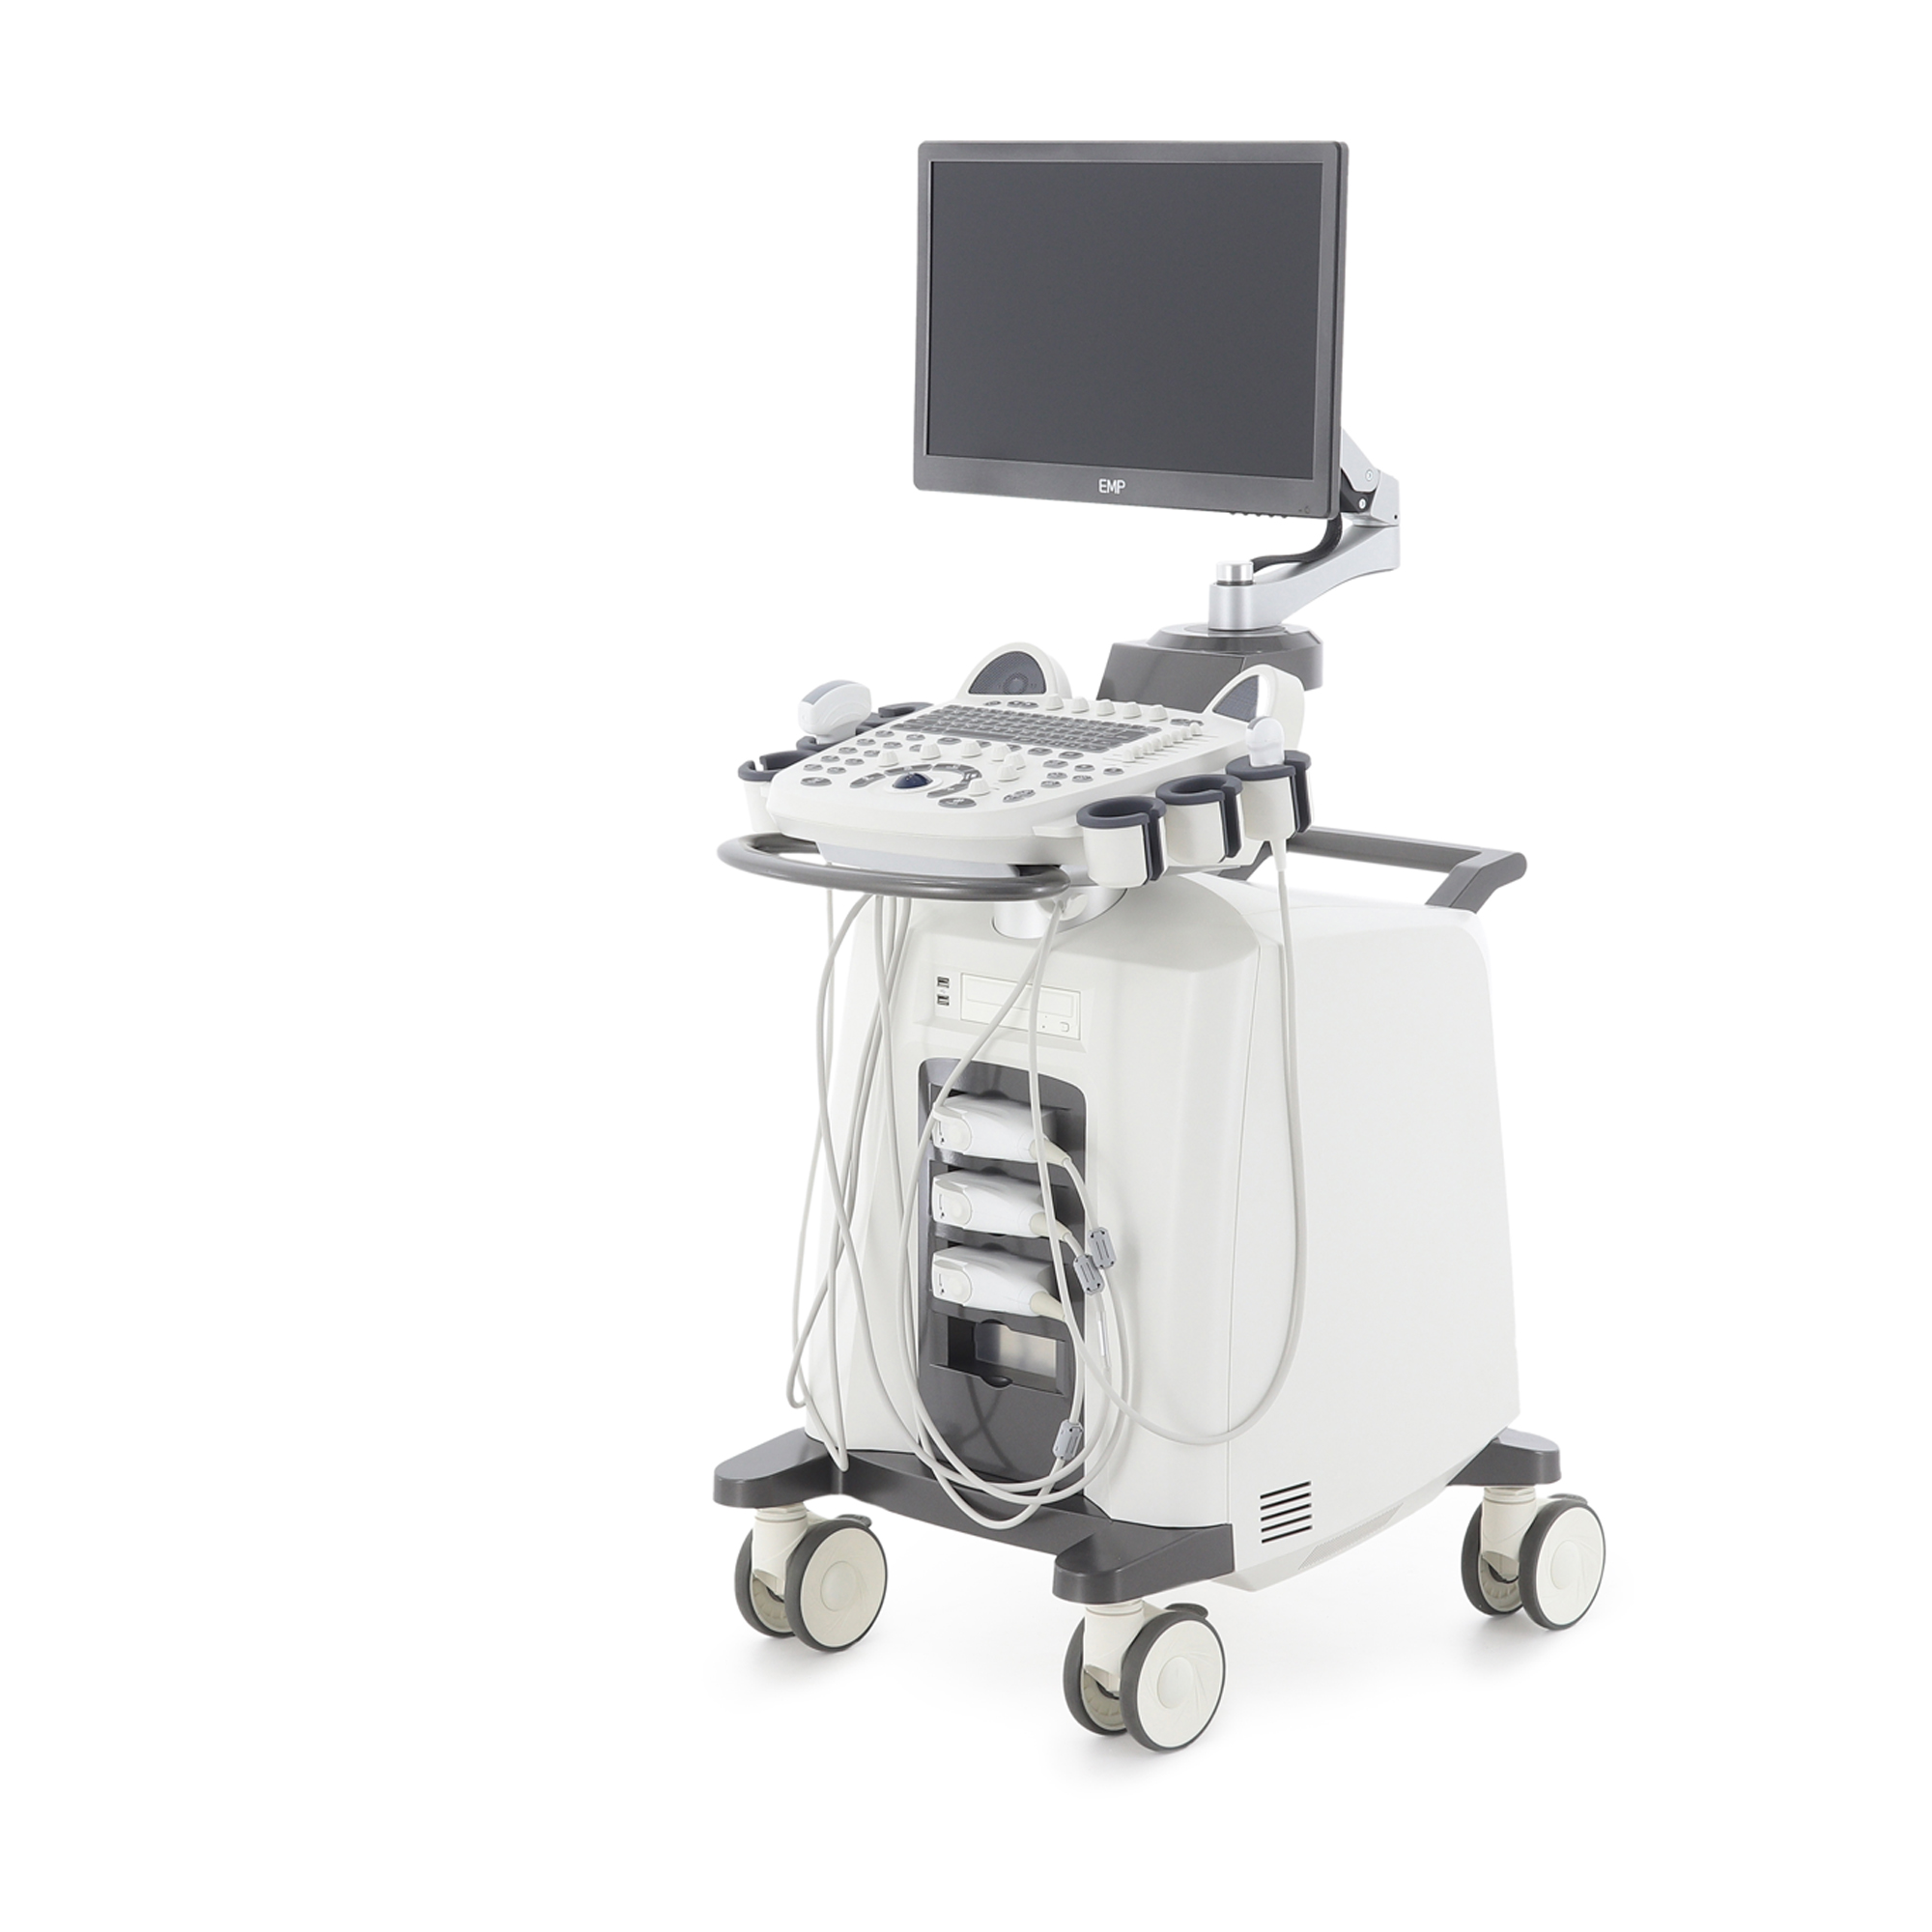 Узи сканер Med-Mos ЕМР3000 с 3-мя датчиками